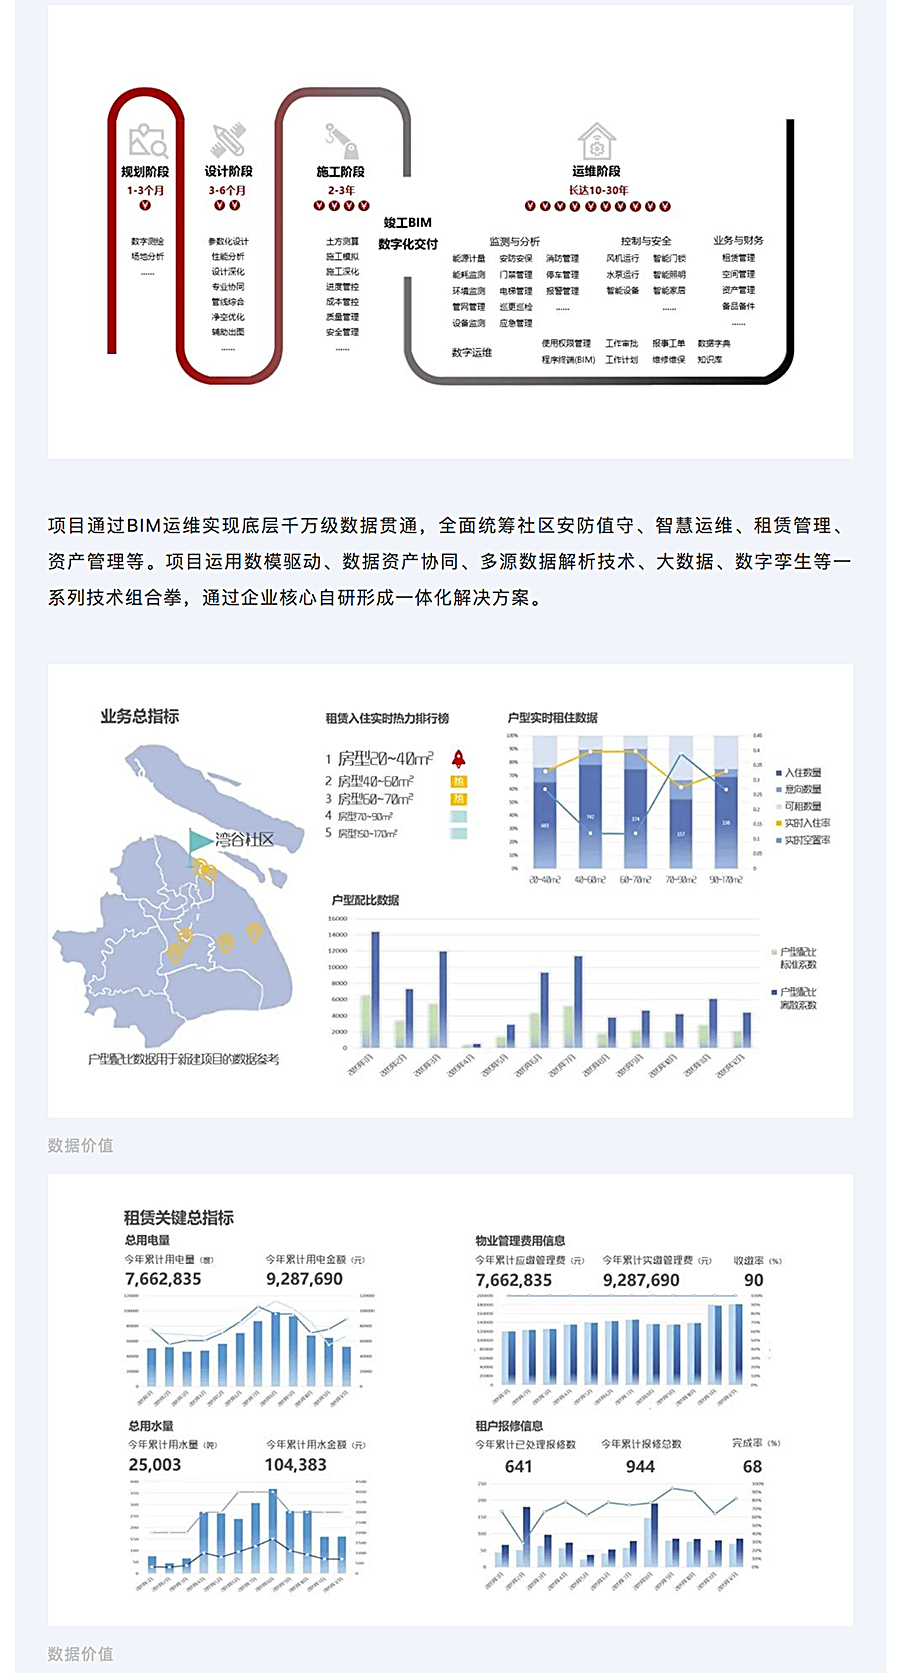 千万级数据贯通-_-上海城投湾谷租赁住宅项目BIM运维研究与实施_0002_图层-3.jpg